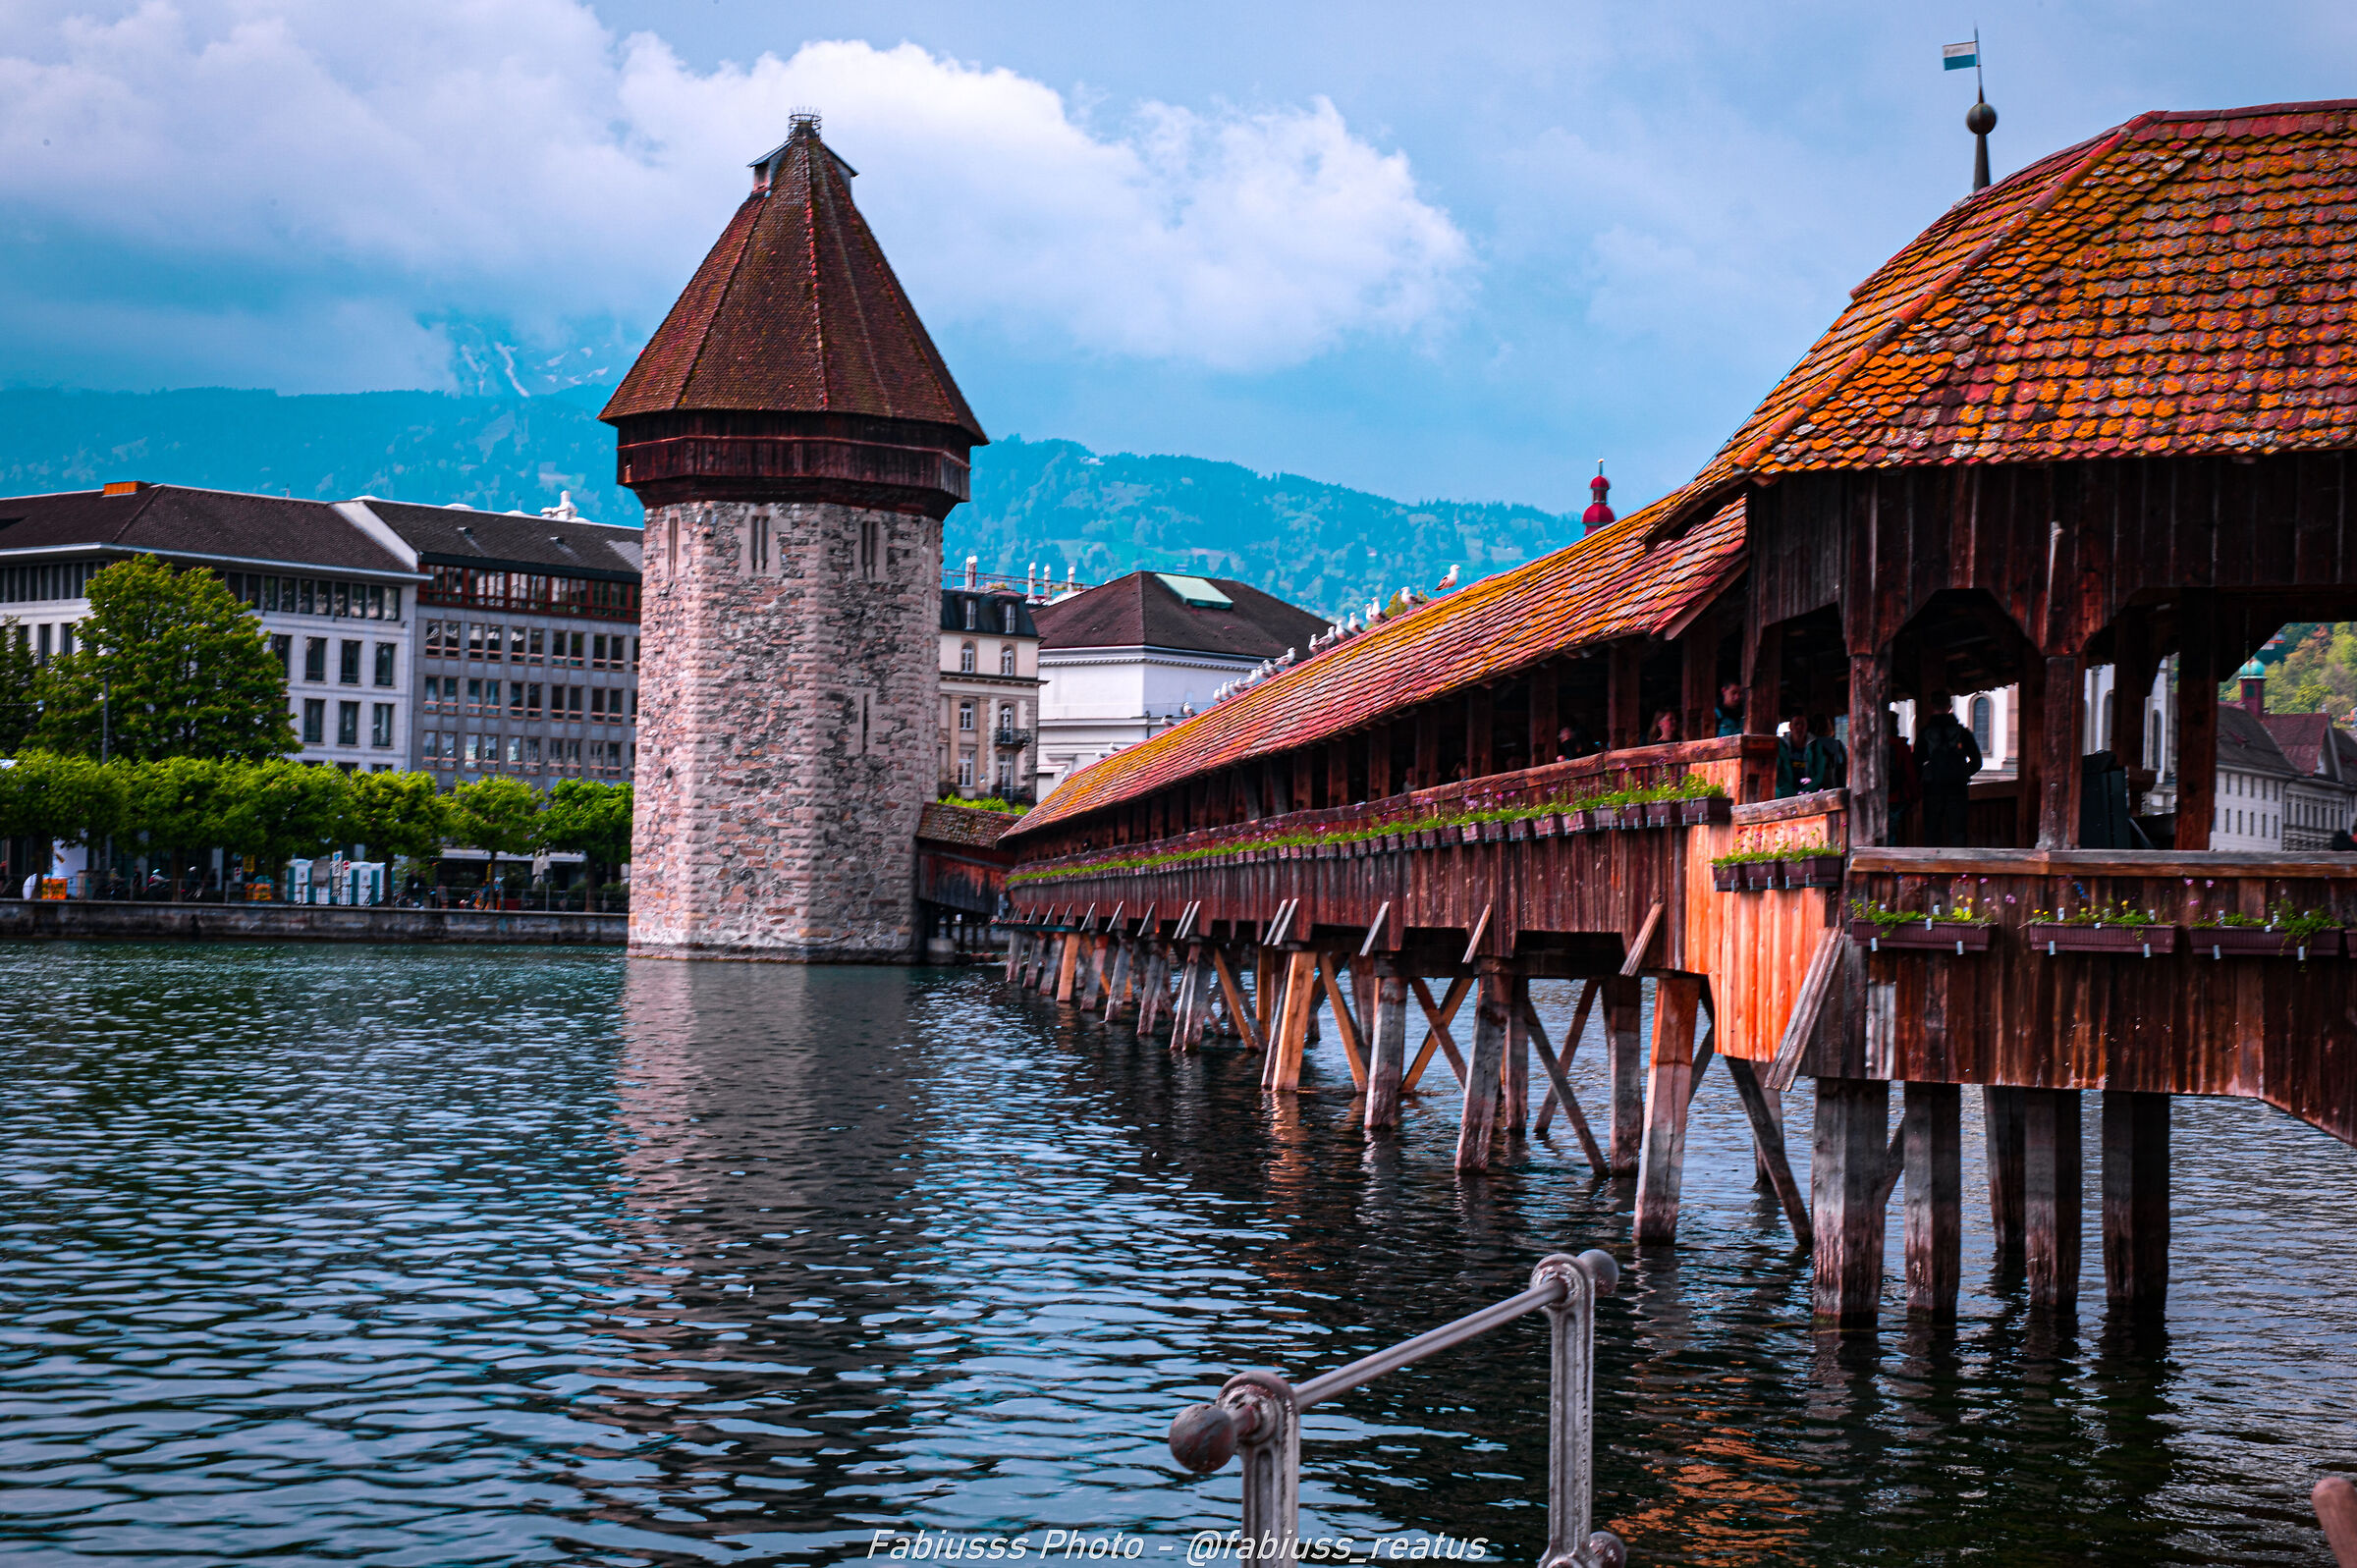 One of Lucerne's famous bridges...